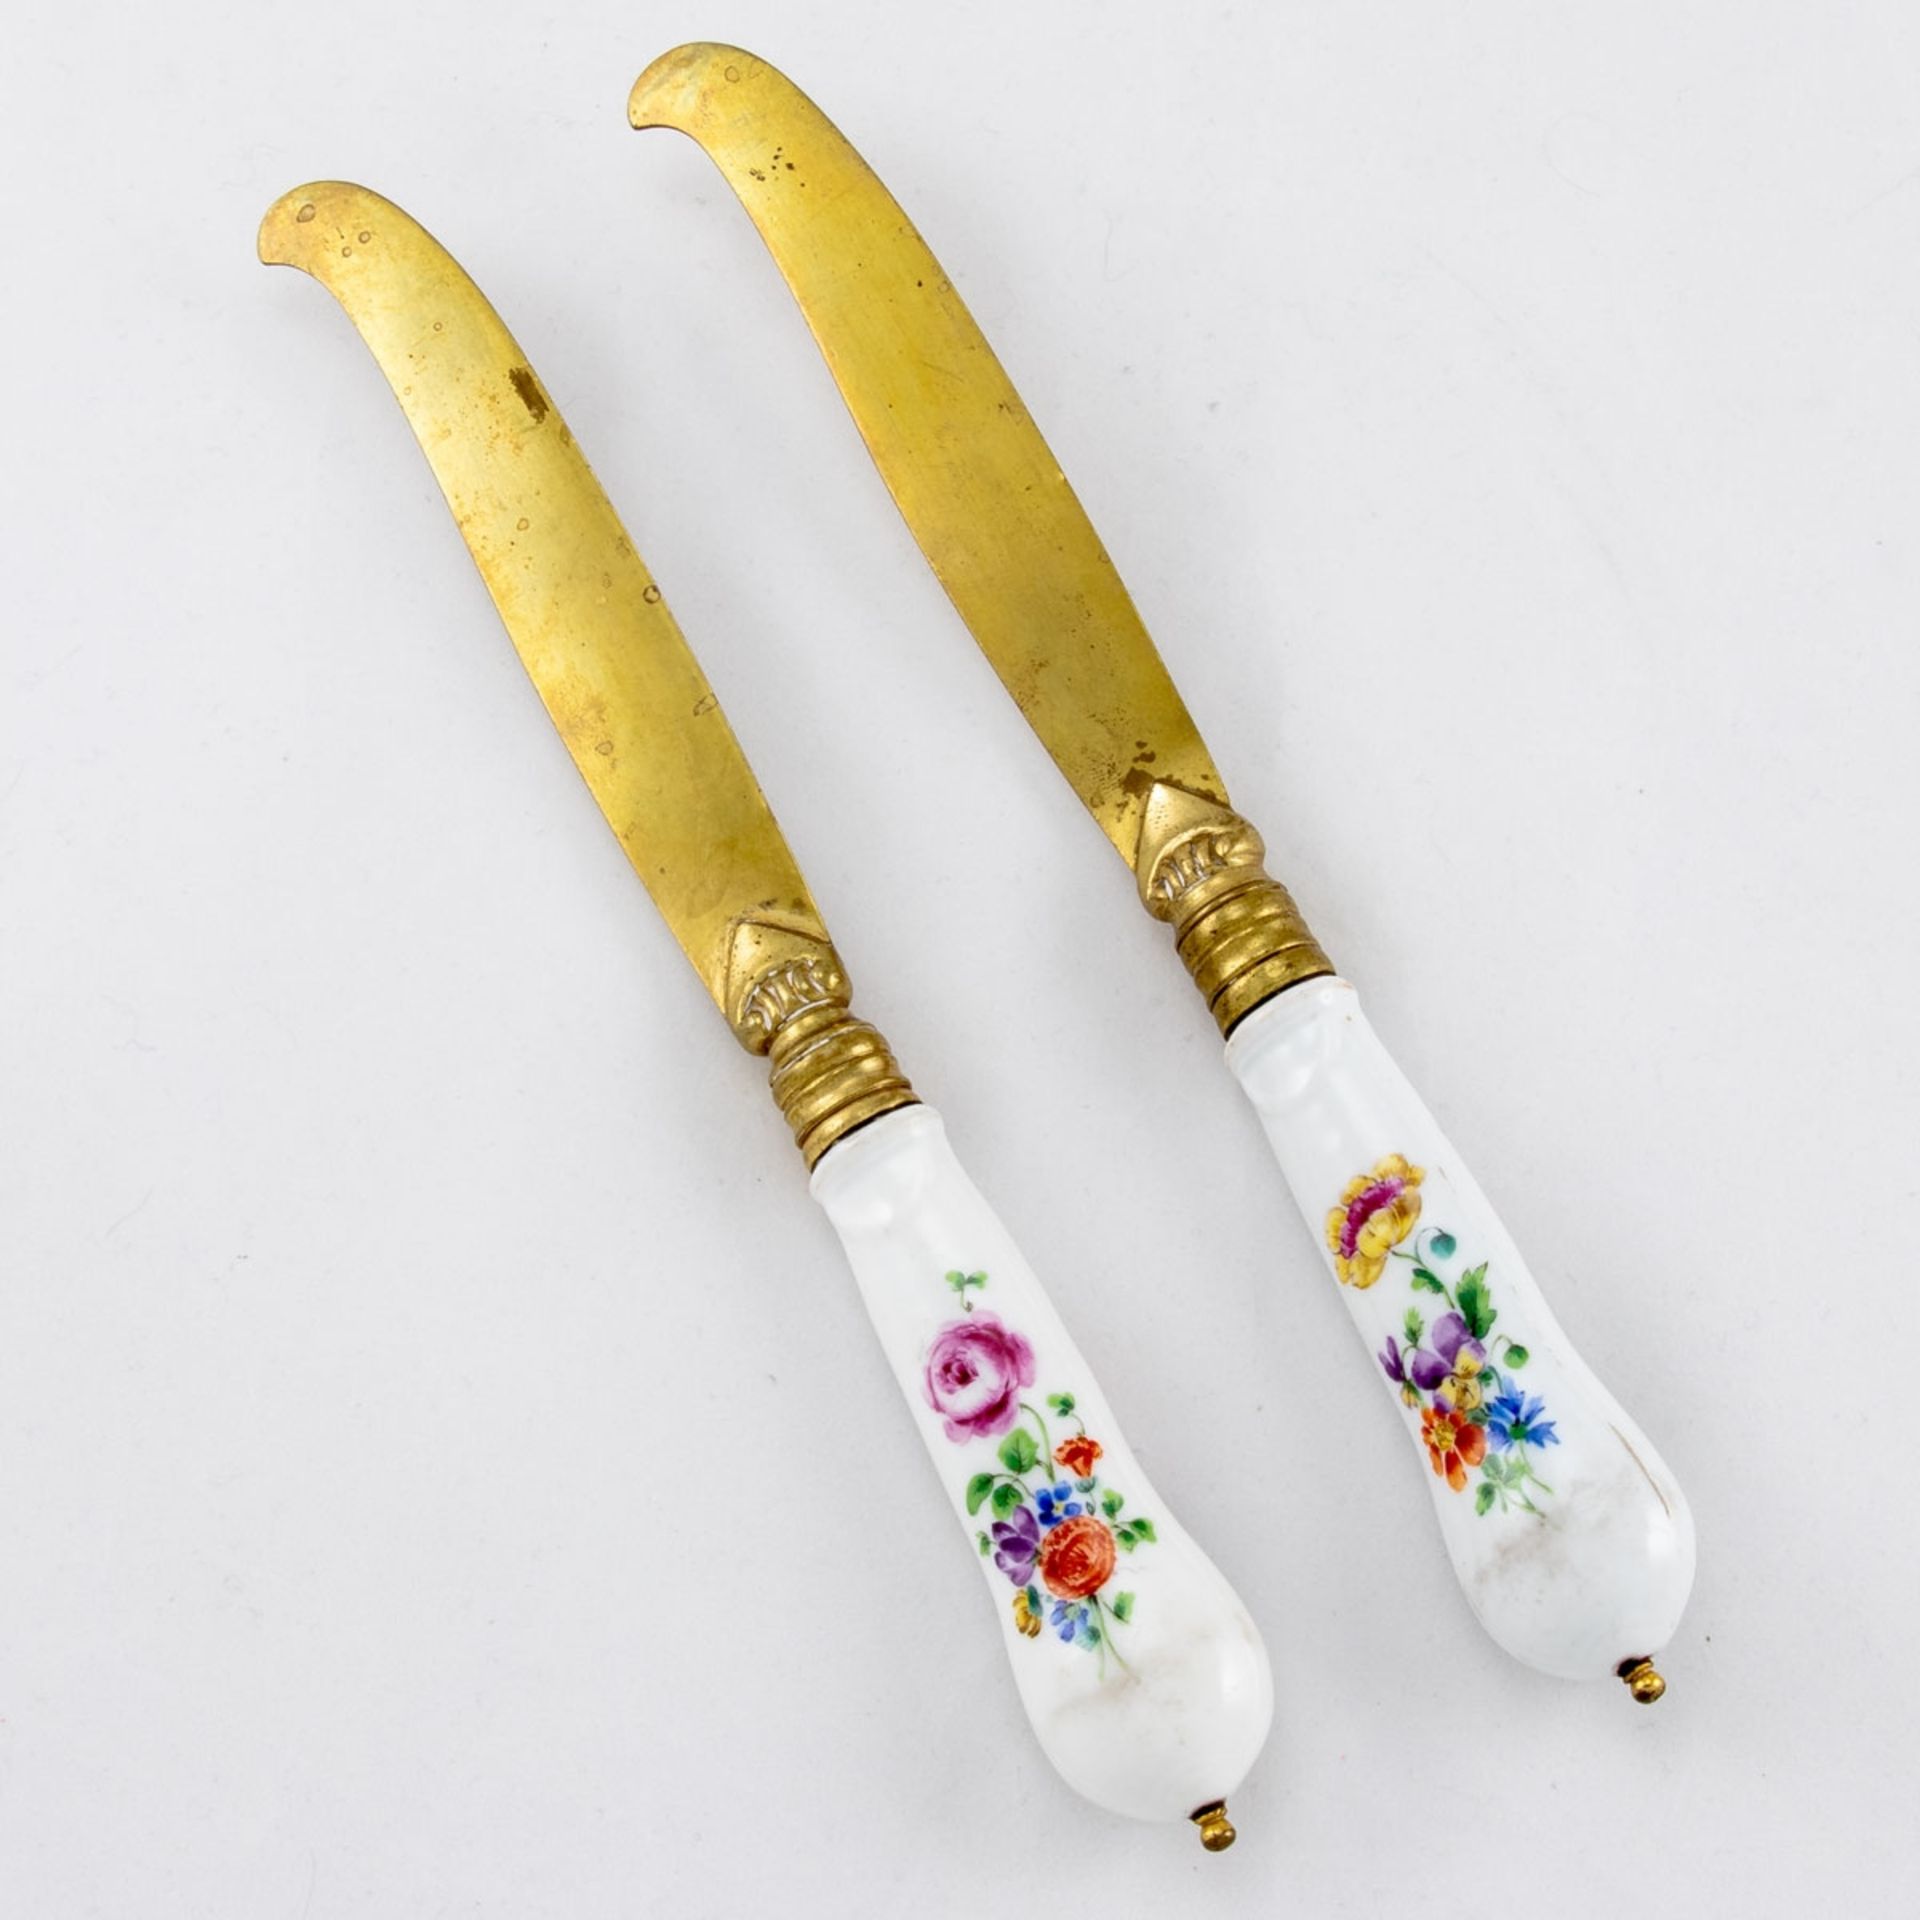 Besteck: 2 Messer Meissen, 3. Viertel 18. Jahrhundert. - Gegenüberliegende Blumen - Porzella